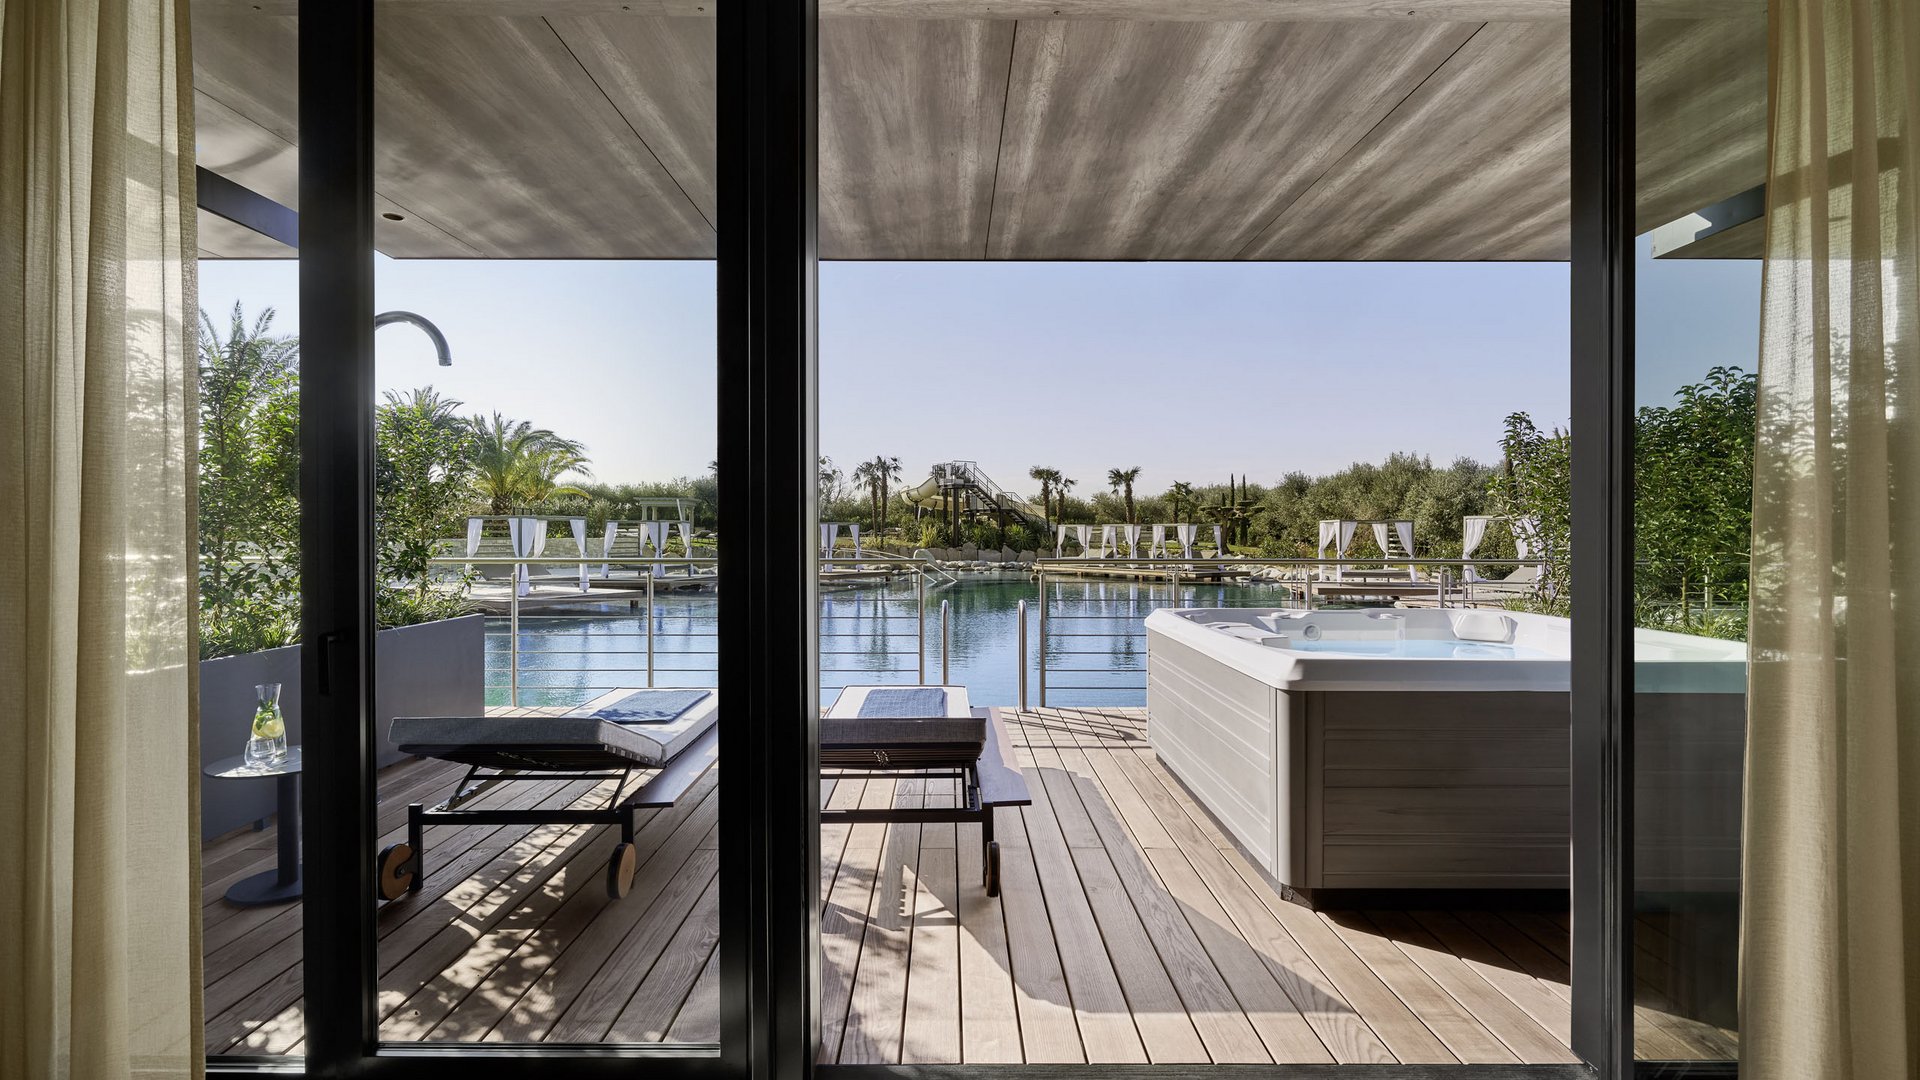 Il vostro hotel di lusso sul Lago di Garda: un sogno.